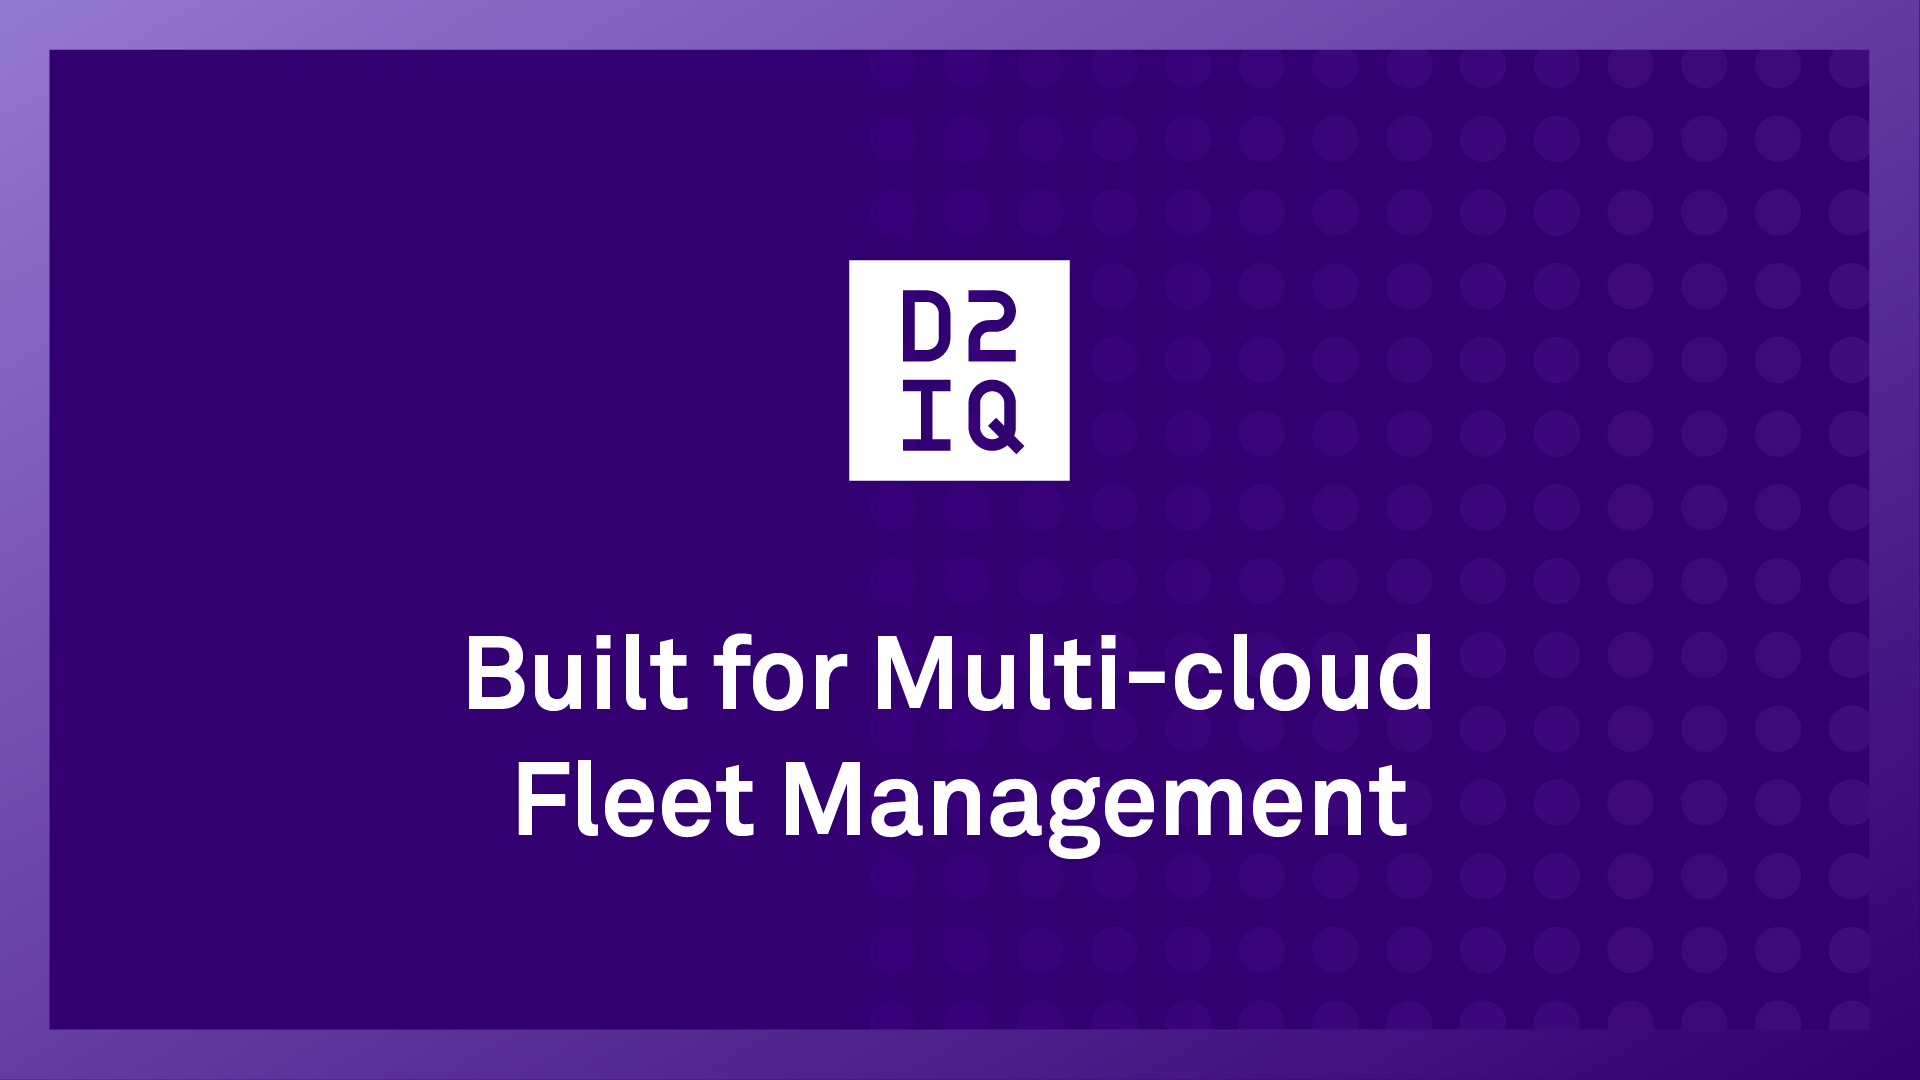 Built for Multi-cloud Fleet Management